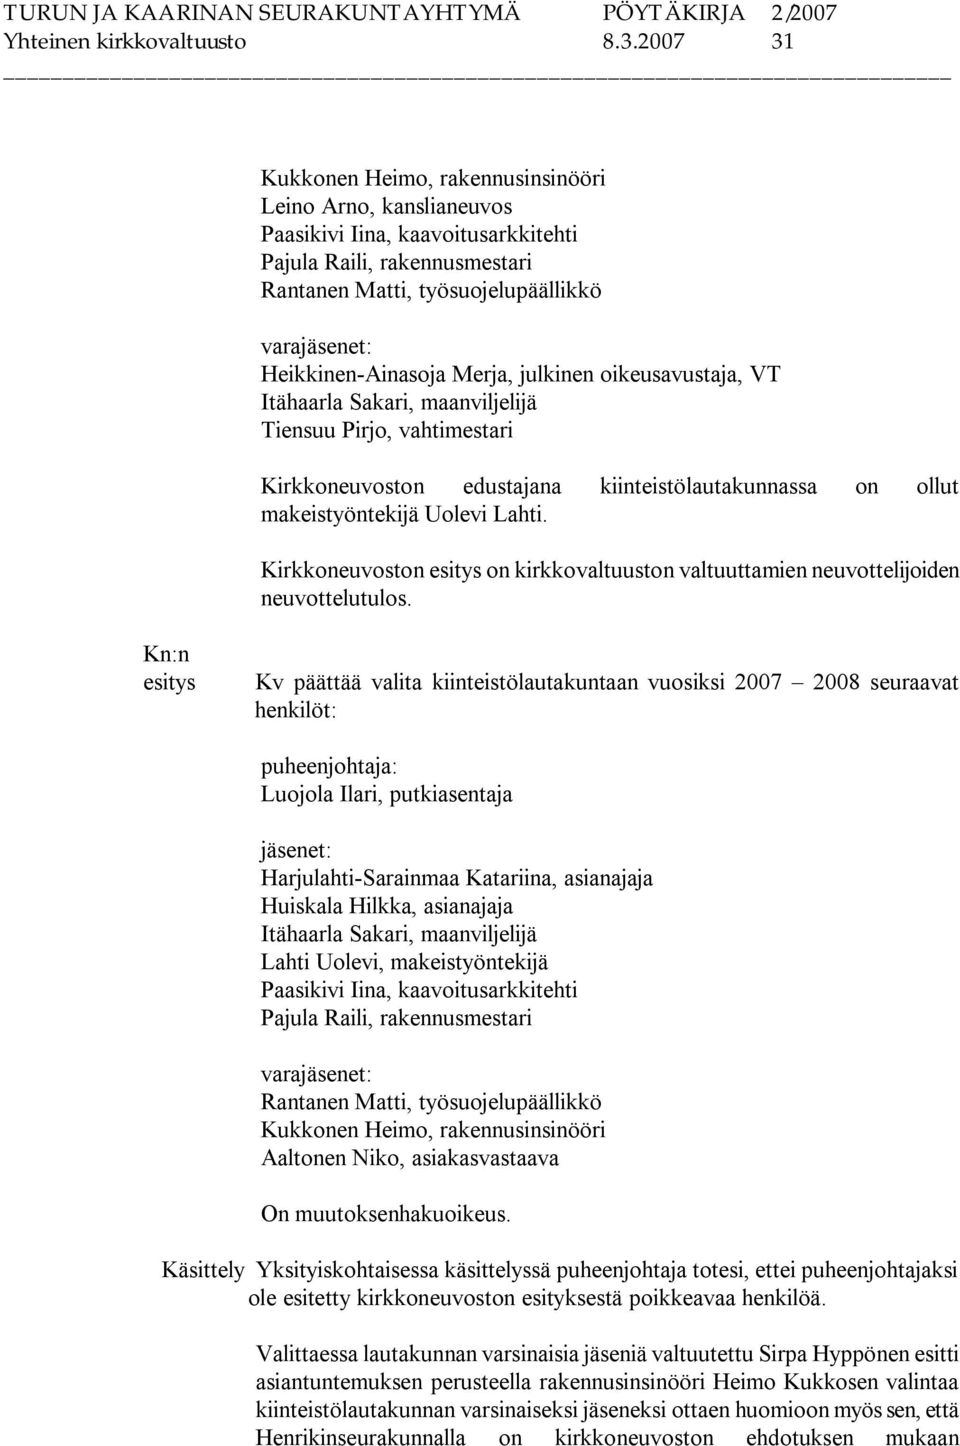 Ainasoja Merja, julkinen oikeusavustaja, VT Itähaarla Sakari, maanviljelijä Tiensuu Pirjo, vahtimestari Kirkkoneuvoston edustajana kiinteistölautakunnassa on ollut makeistyöntekijä Uolevi Lahti.